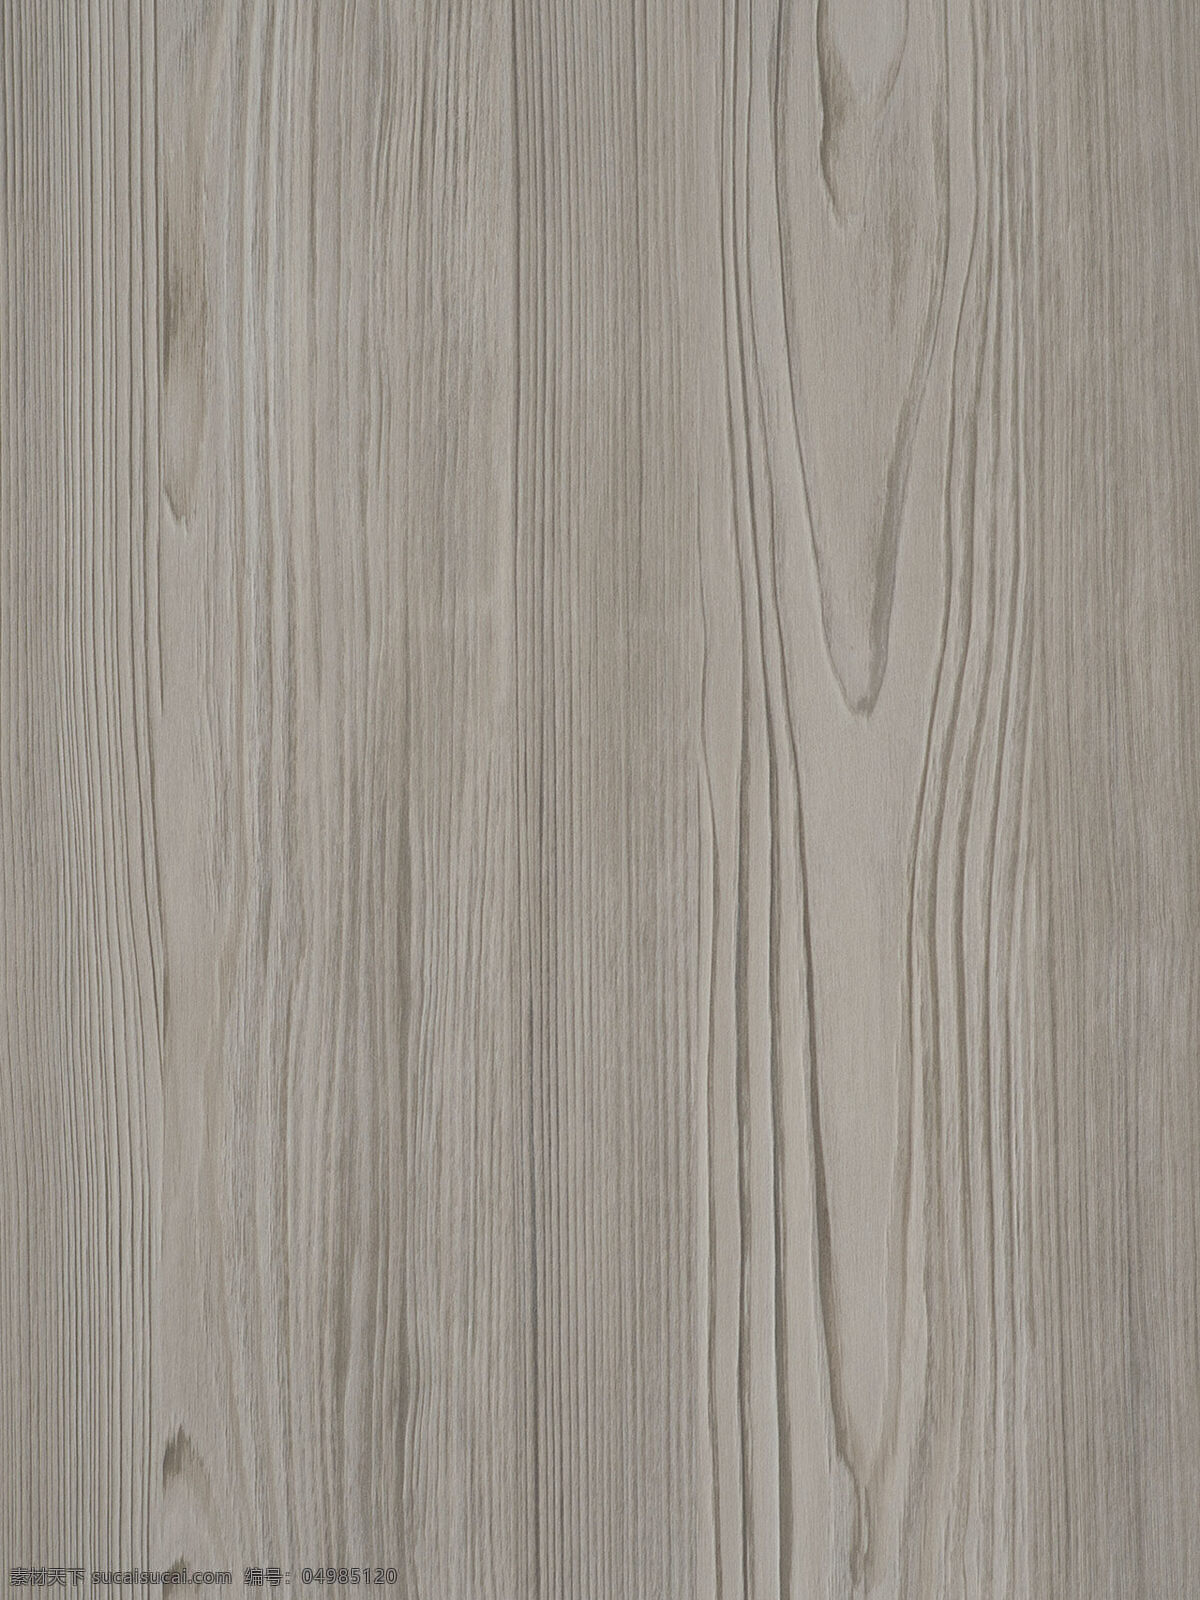 木纹贴图 木纹素材 瓷砖实木纹 木纹背景 高档木纹 木纹纹理 高清木纹 木地板贴图 环境设计 建筑设计